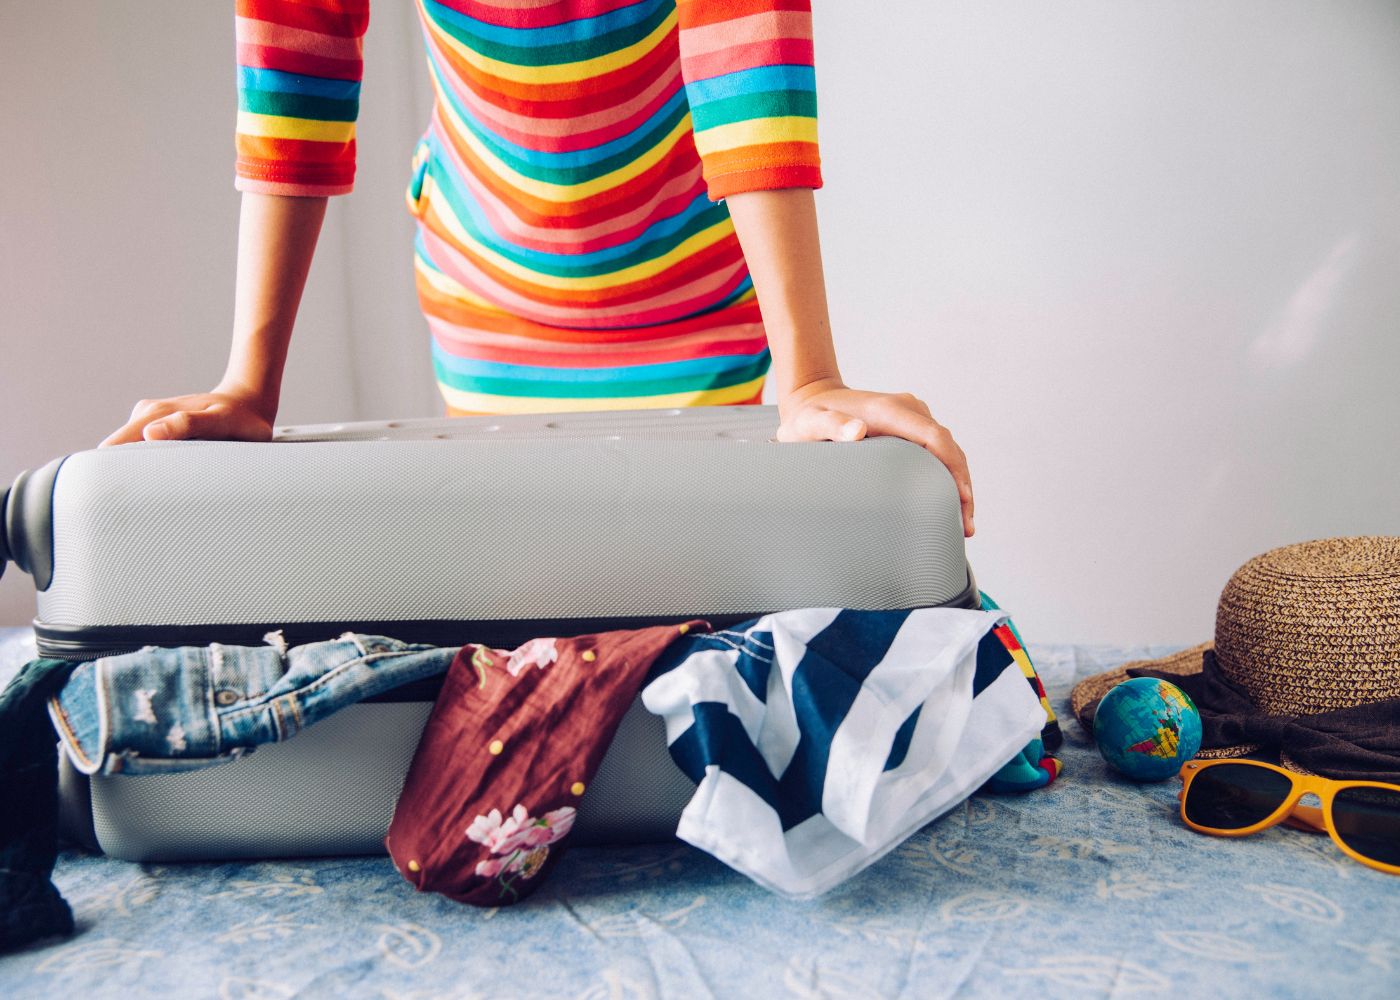 Bientôt l'été: 6 astuces pour bien organiser votre valise